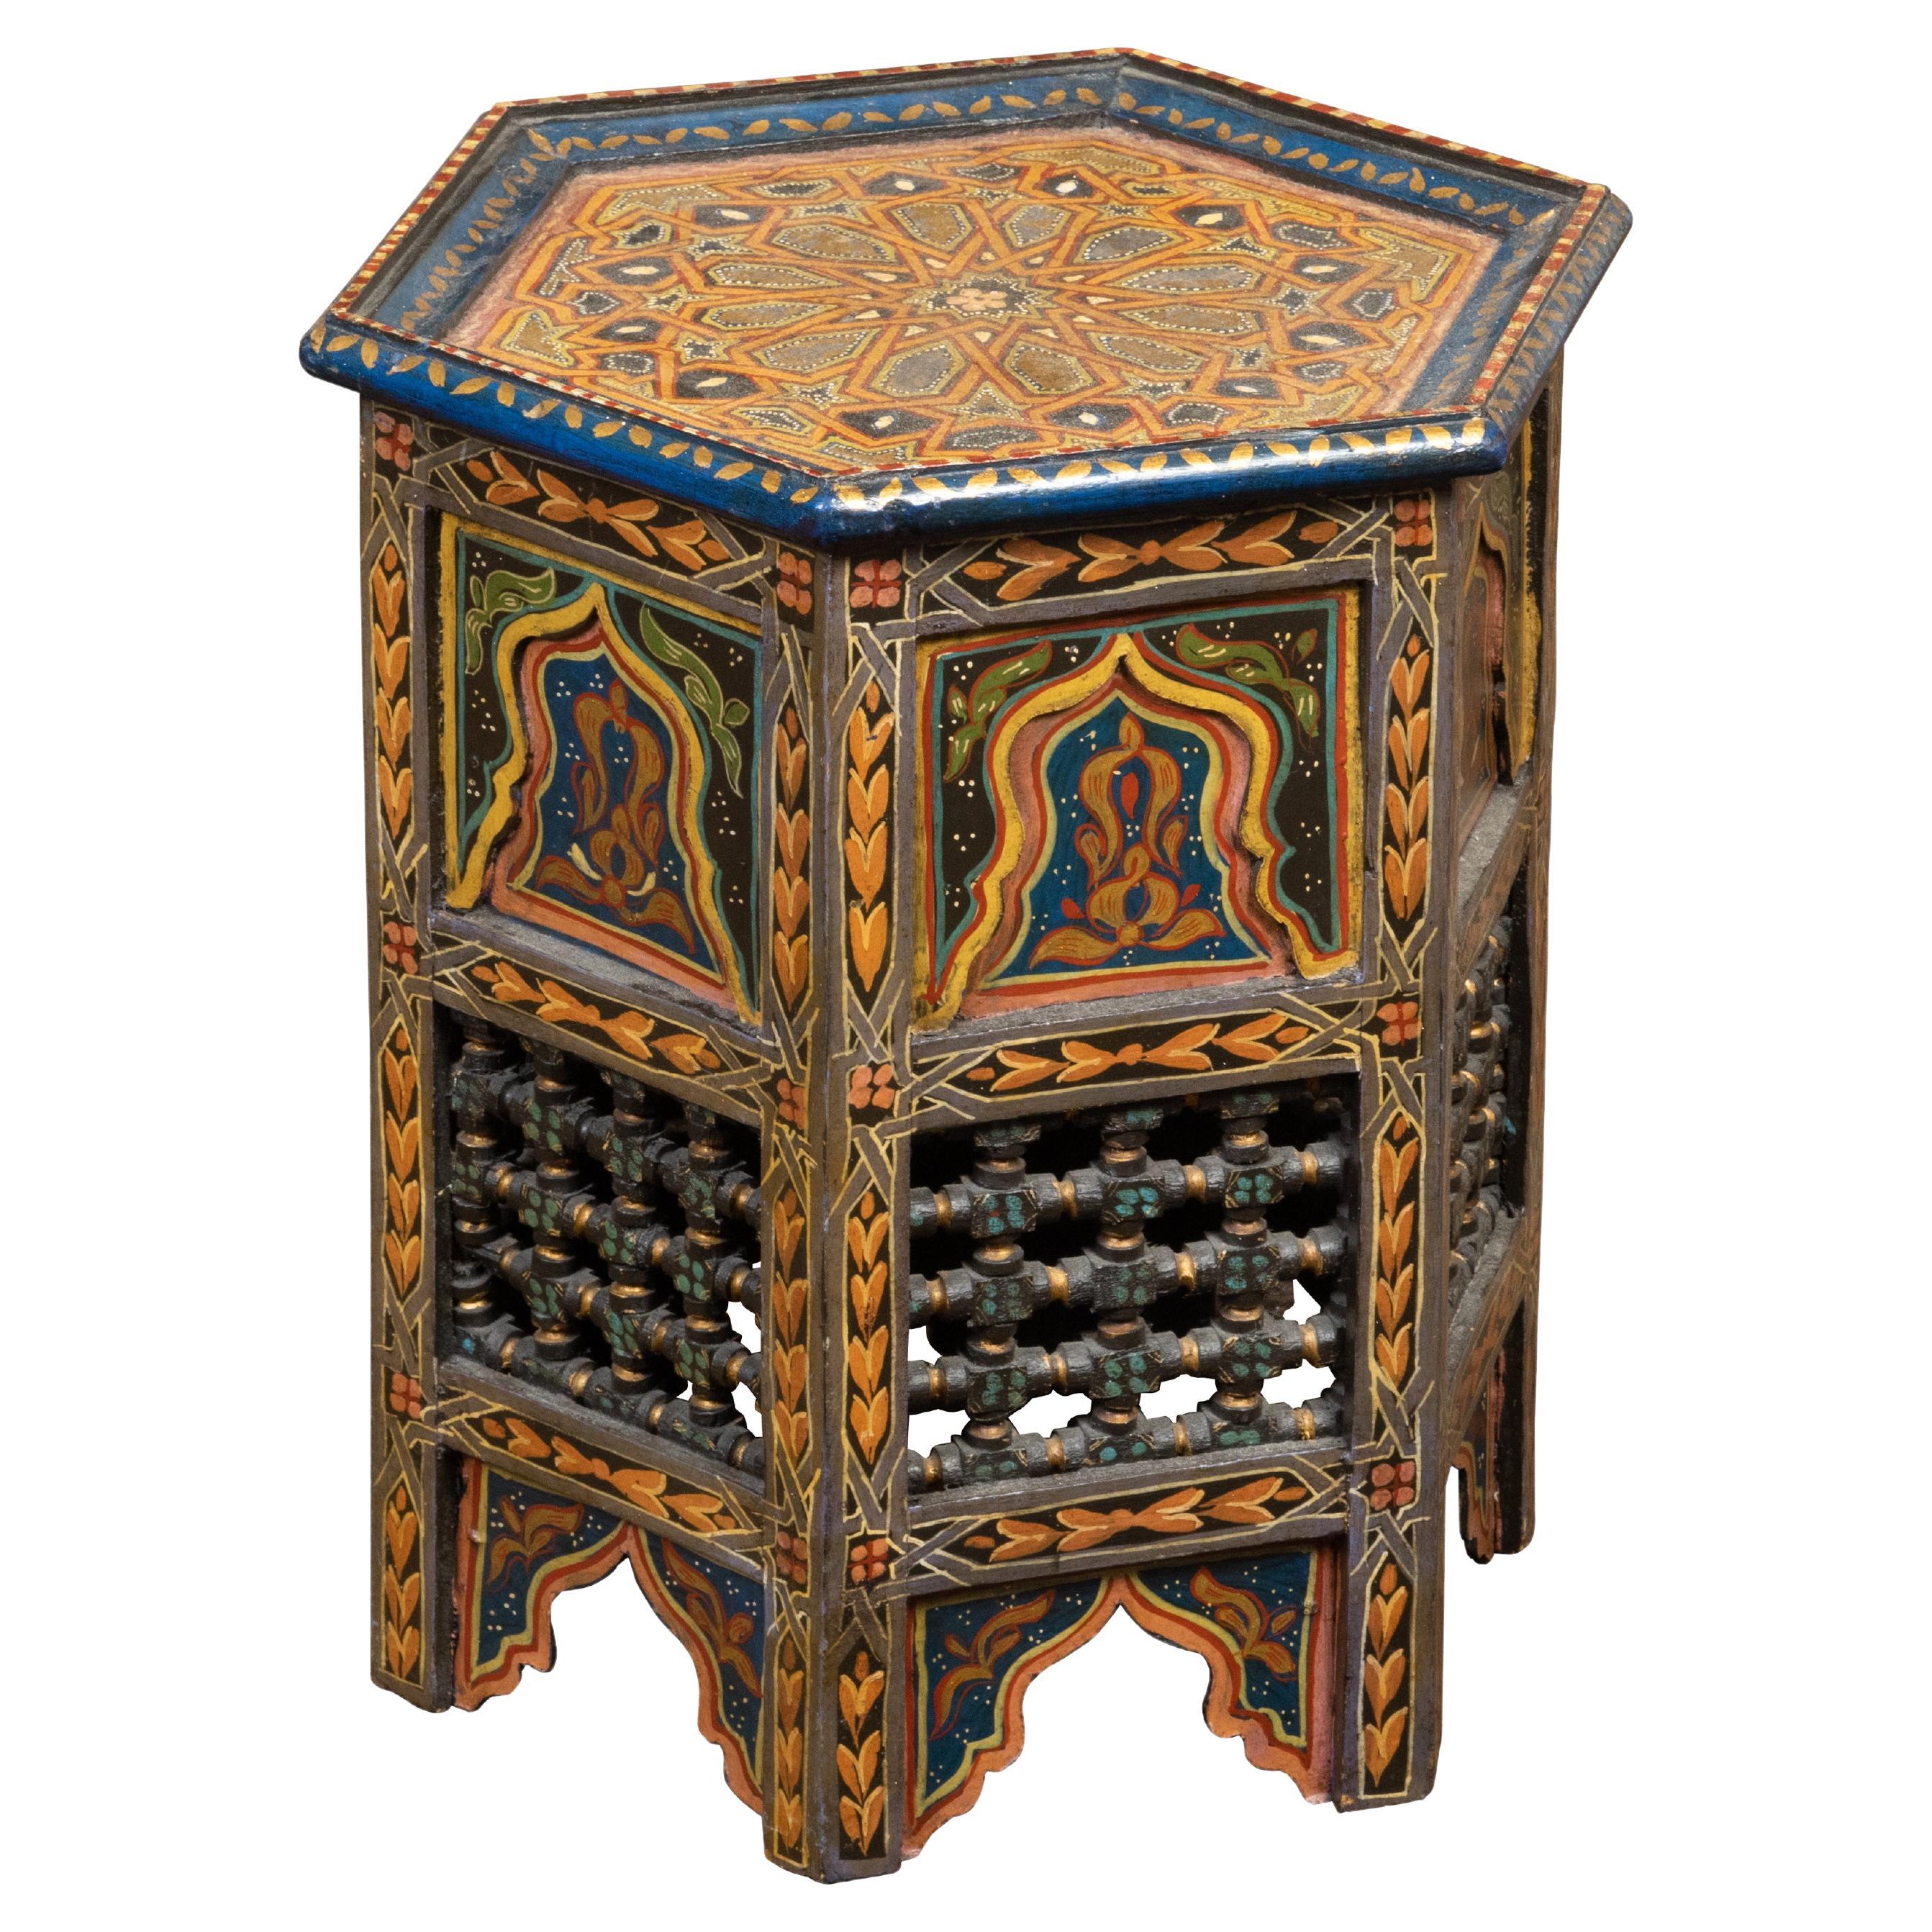 Table de style mauresque marocain des années 1920 avec plateau hexagonal et décor polychrome